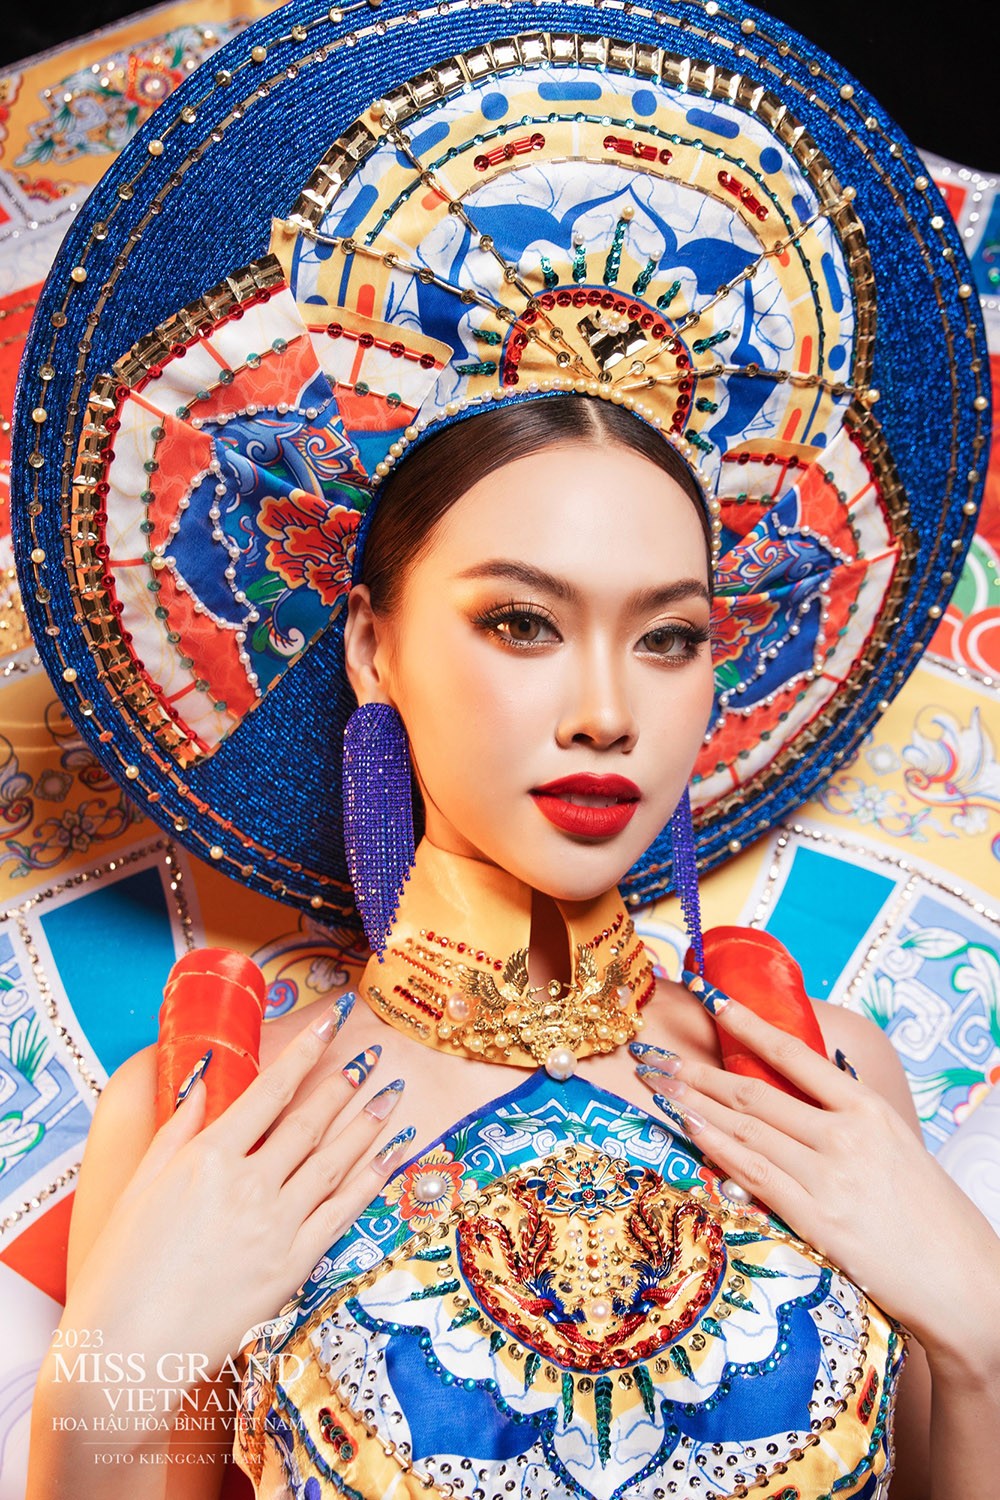 Đặng Hoàng Tâm Như trình diễn trang phục dân tộc lấy cảm hứng từ nghệ thuật Pháp lam Huế